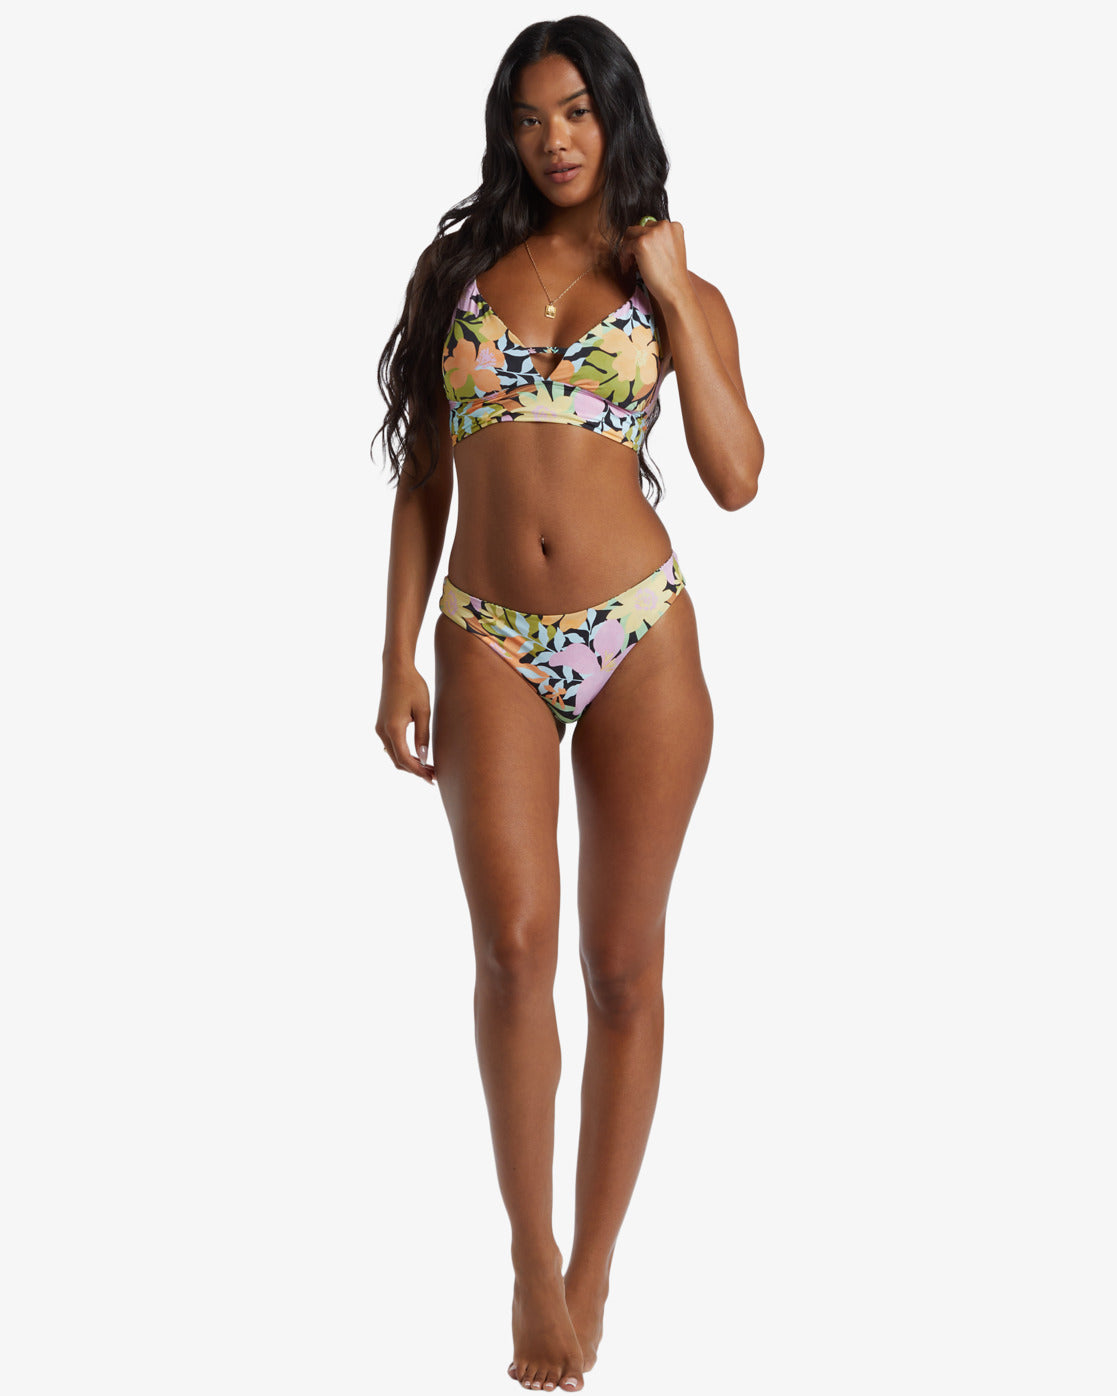 Mas Aloha Reversible Bikini Top